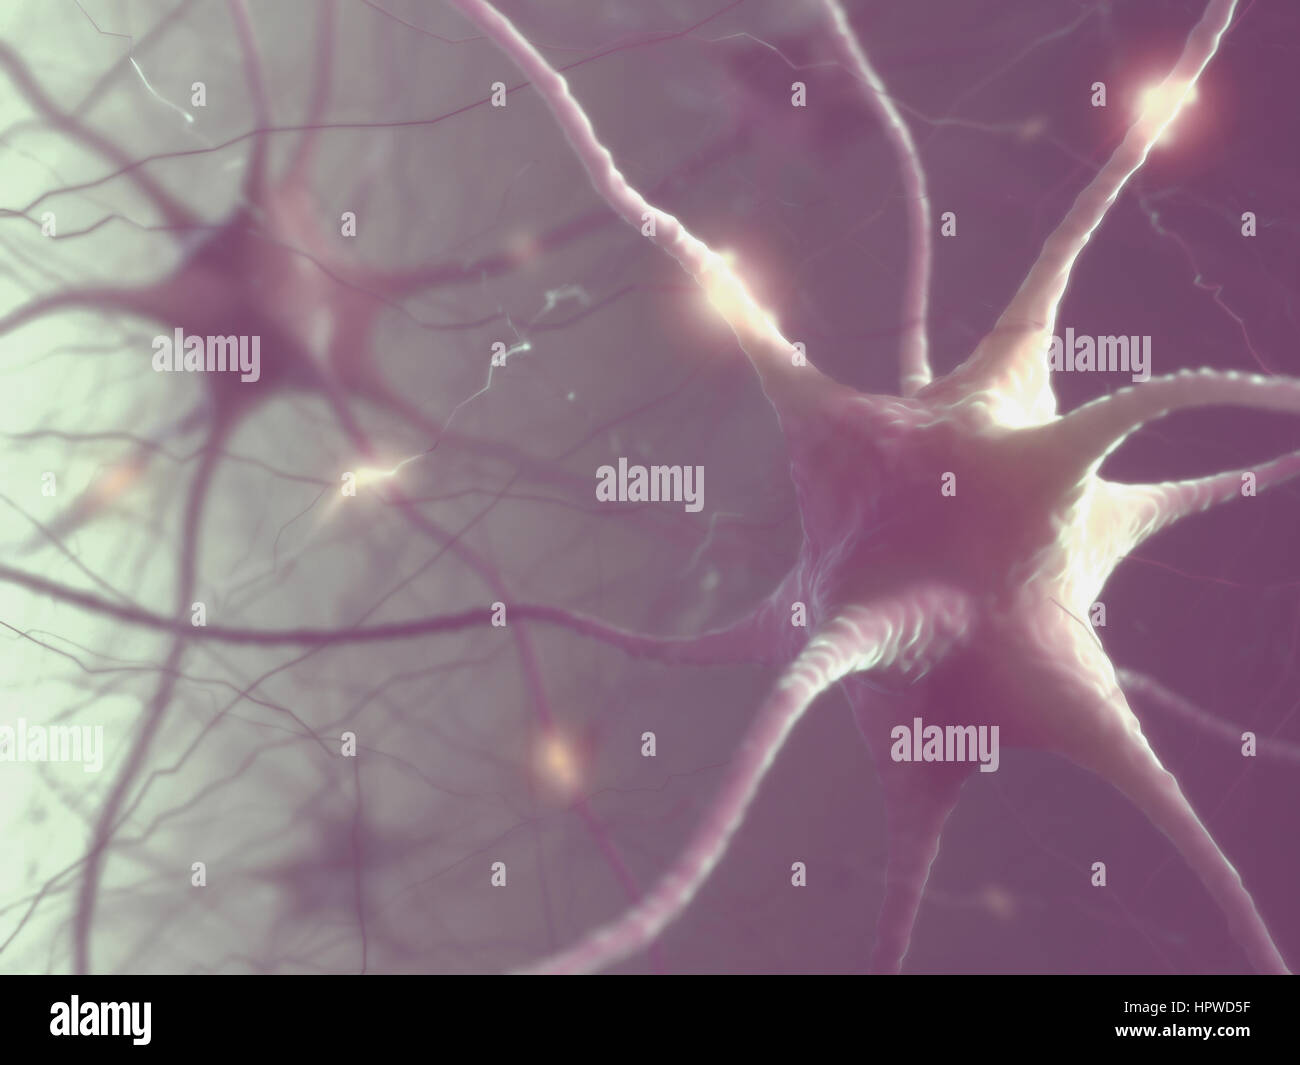 Le cellule nervose del cervello umano, illustrazione. Foto Stock